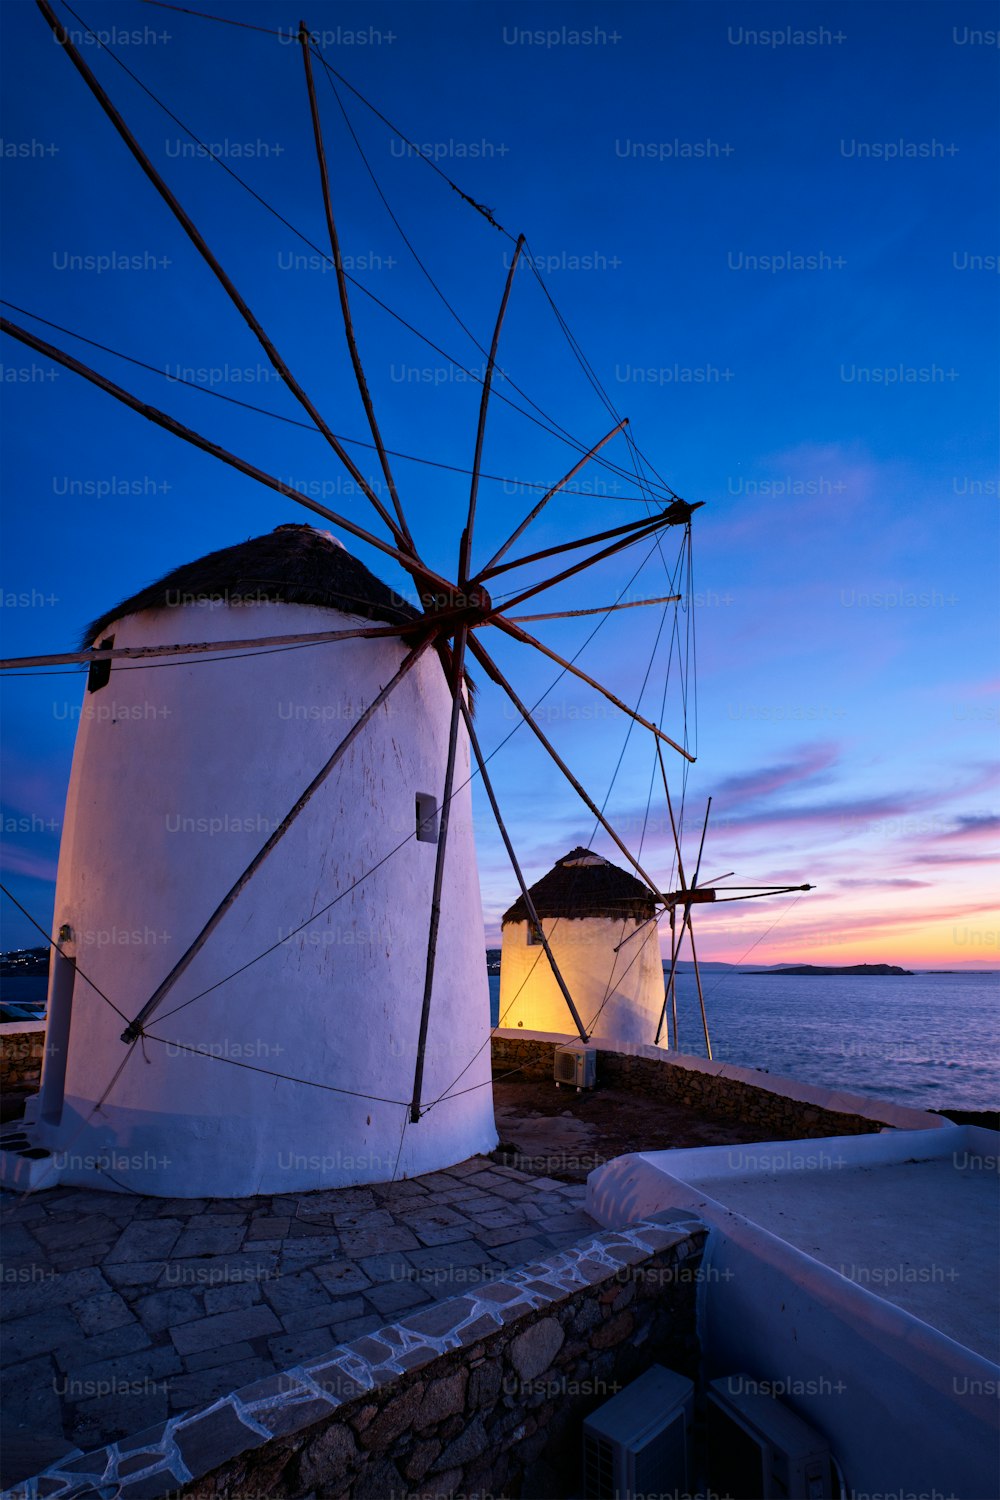 Vista panoramica dei famosi mulini a vento della città di Mykonos Chora. Mulini a vento greci tradizionali sull'isola di Mykonos illuminati di sera, Cicladi, Grecia. Camminare con la steadycam.